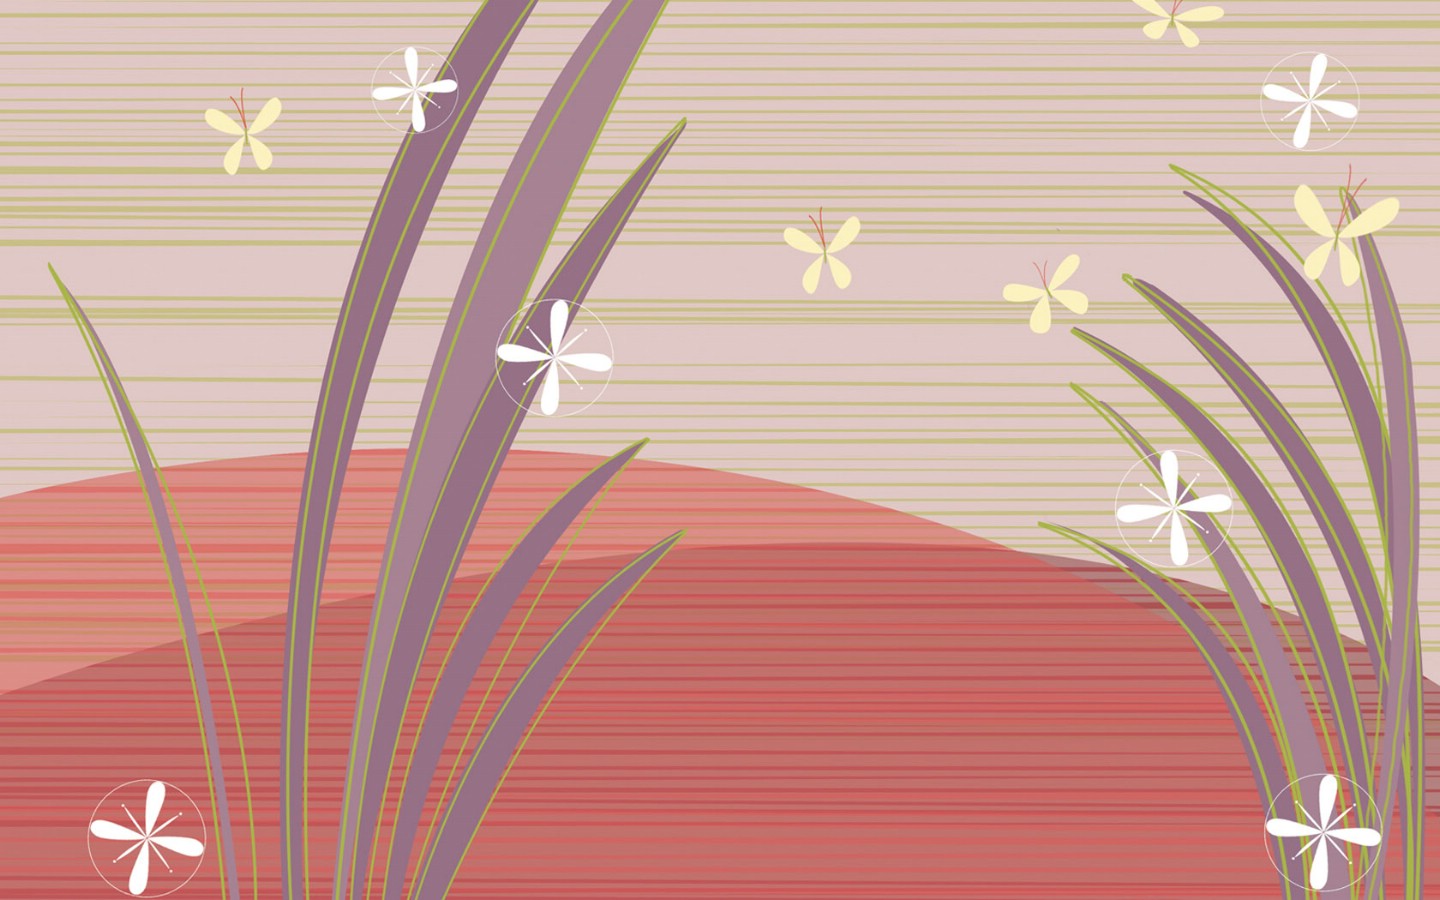 壁纸1440x900 抽象花卉图案设计 抽象花卉插画壁纸壁纸 艺术与抽象花卉壁纸壁纸 艺术与抽象花卉壁纸图片 艺术与抽象花卉壁纸素材 花卉壁纸 花卉图库 花卉图片素材桌面壁纸